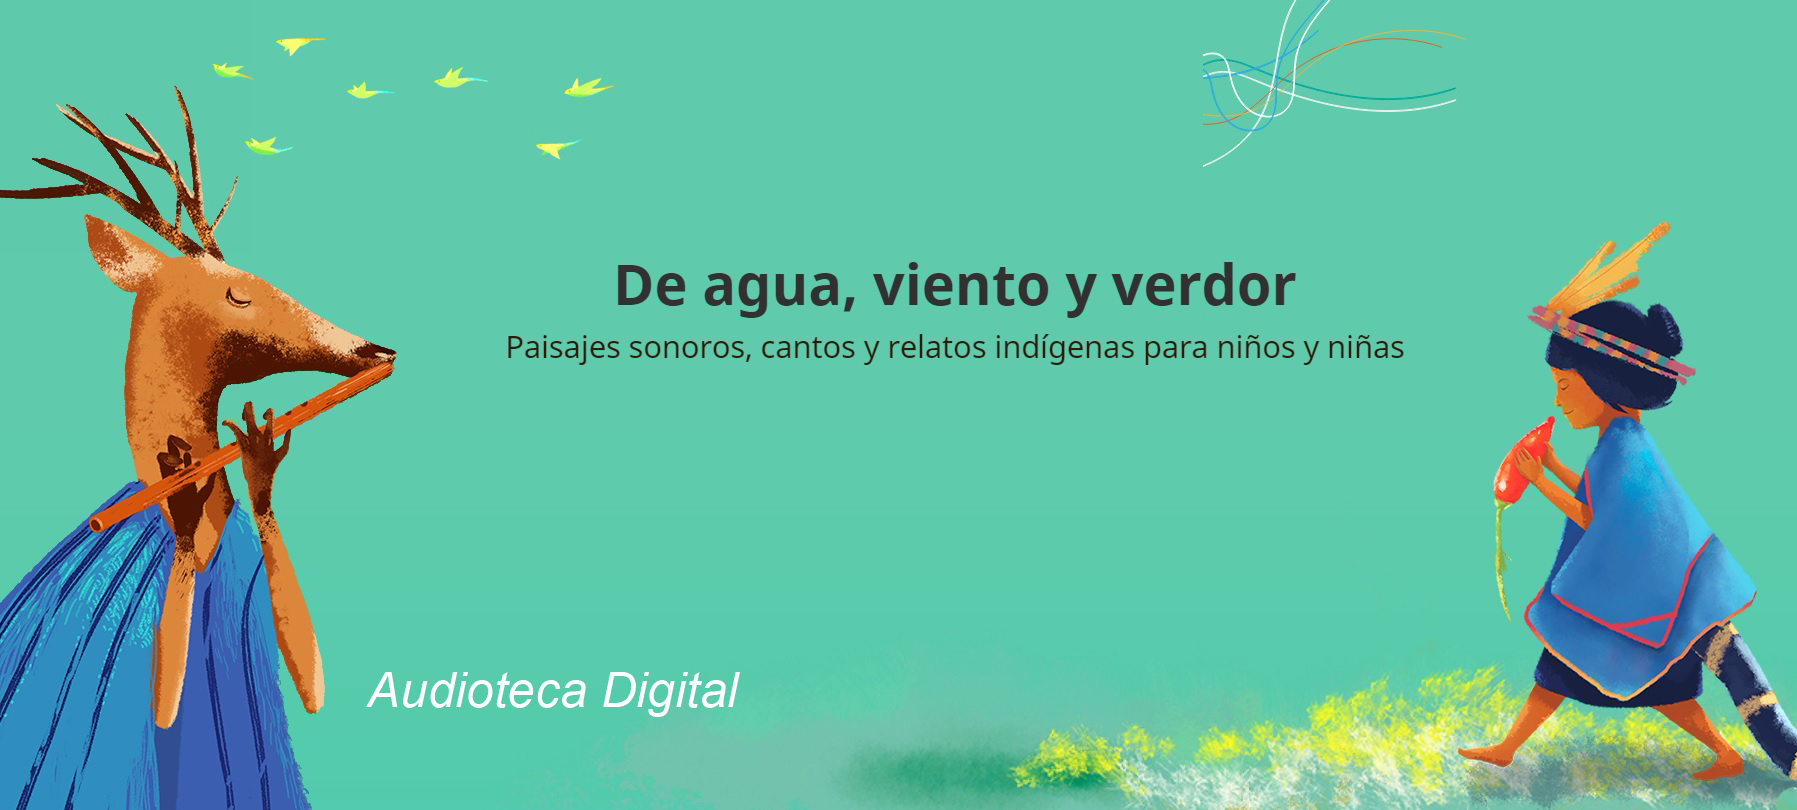 Audioteca Digital